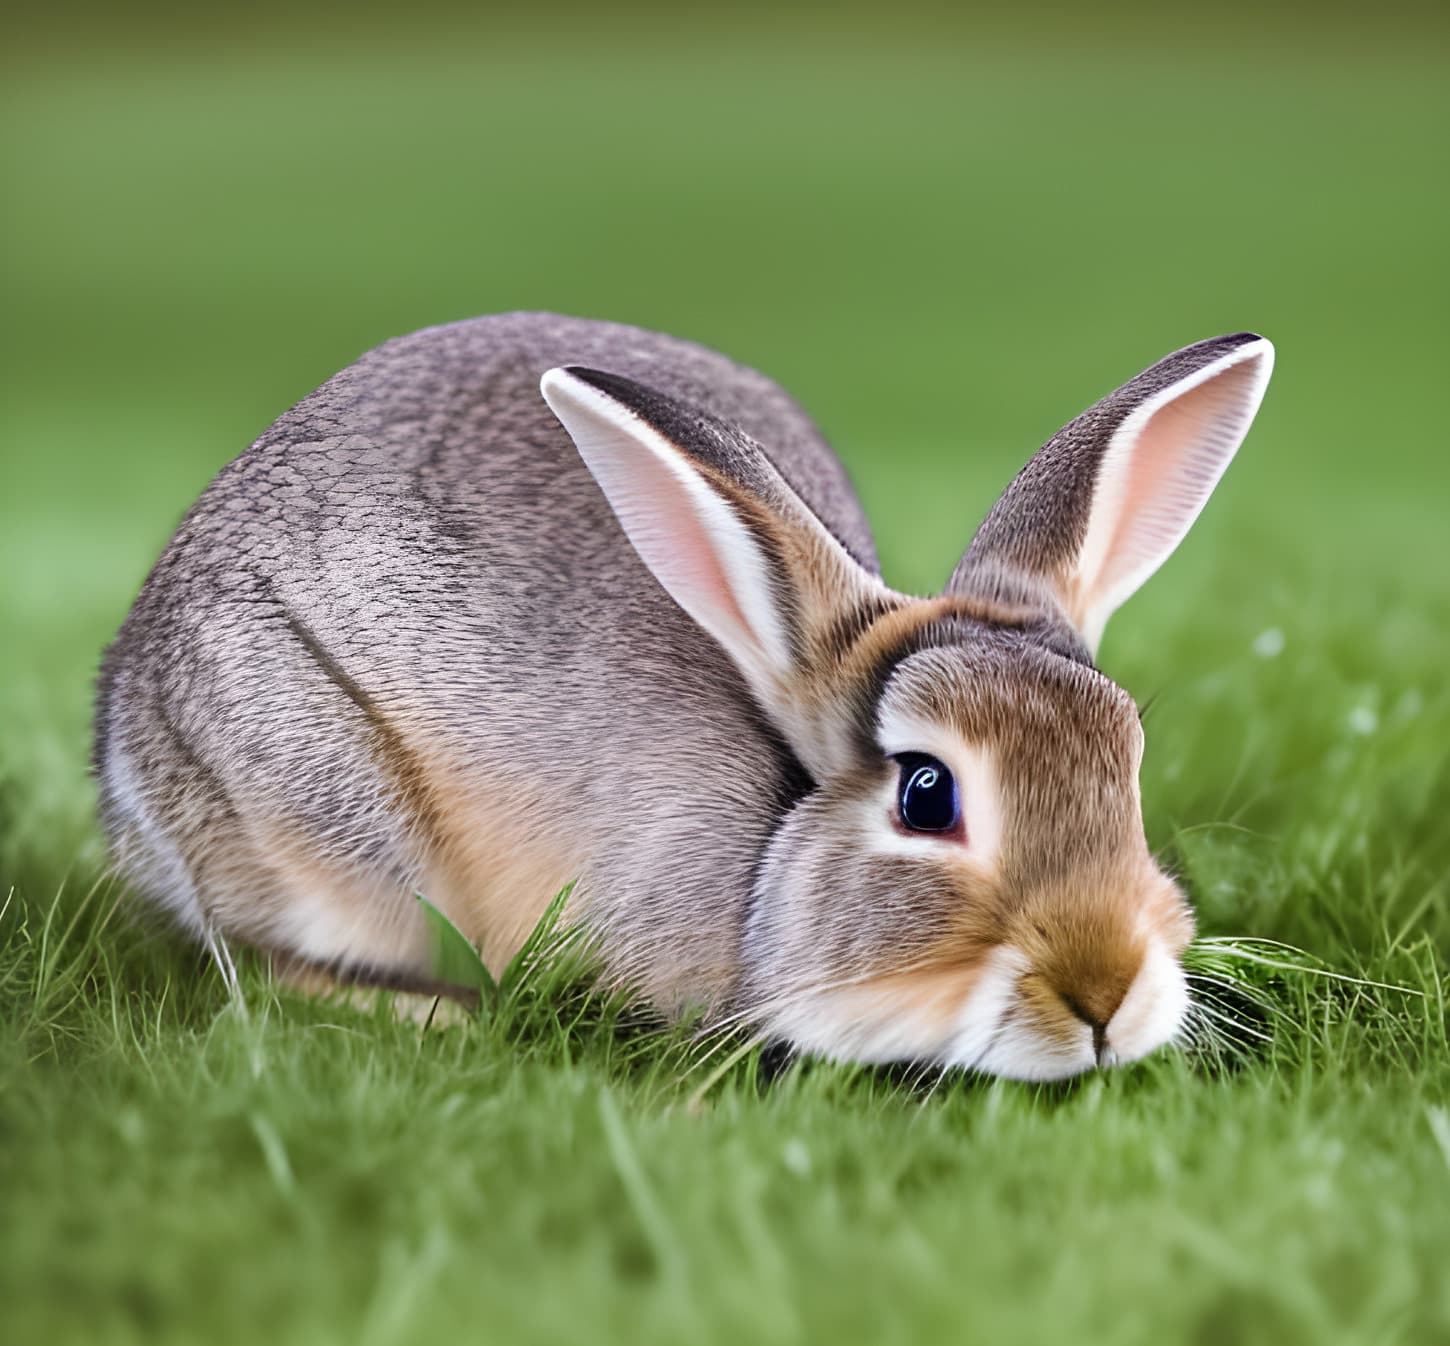 Bunny, Urocza, królik, zbliżenie, trawnik, trawa, gryzonie, Głowica